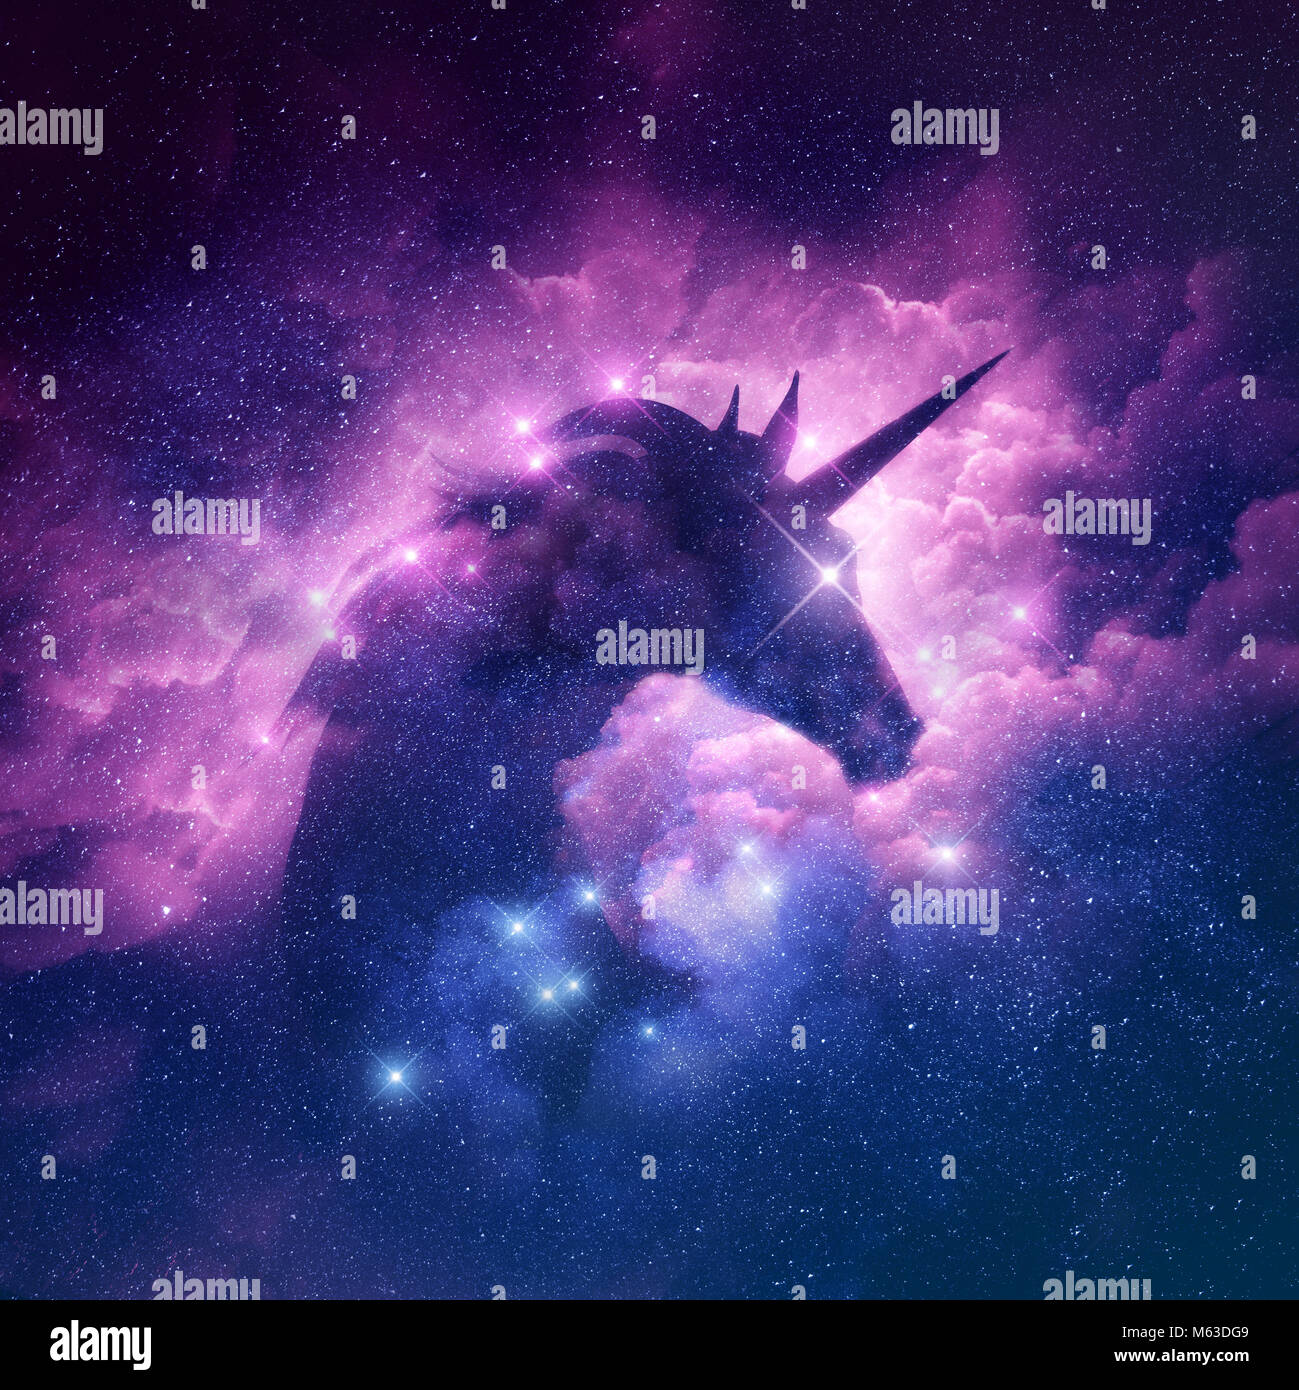 Una silhouette unicorn in una galassia nebula cloud. Immagine raster. Foto Stock